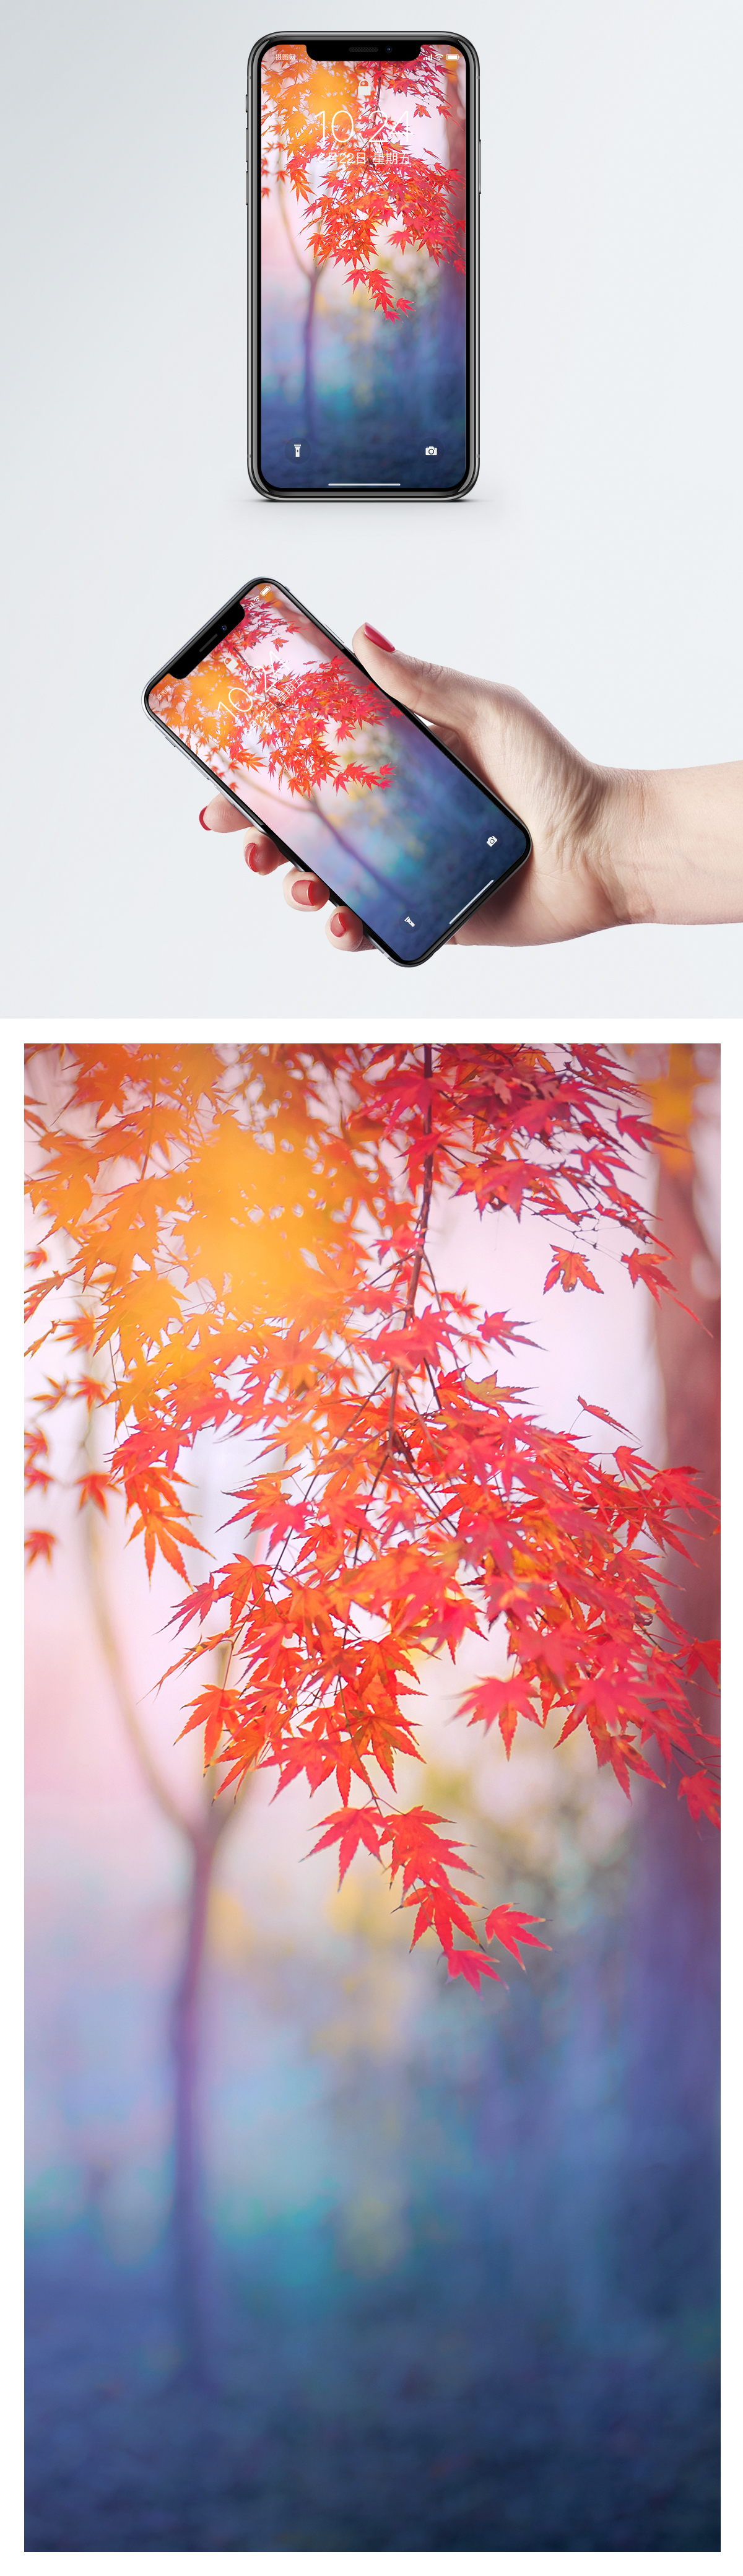 楓樹手機壁紙圖片素材 Jpg圖片尺寸1125 2436px 高清圖片 Zh Lovepik Com